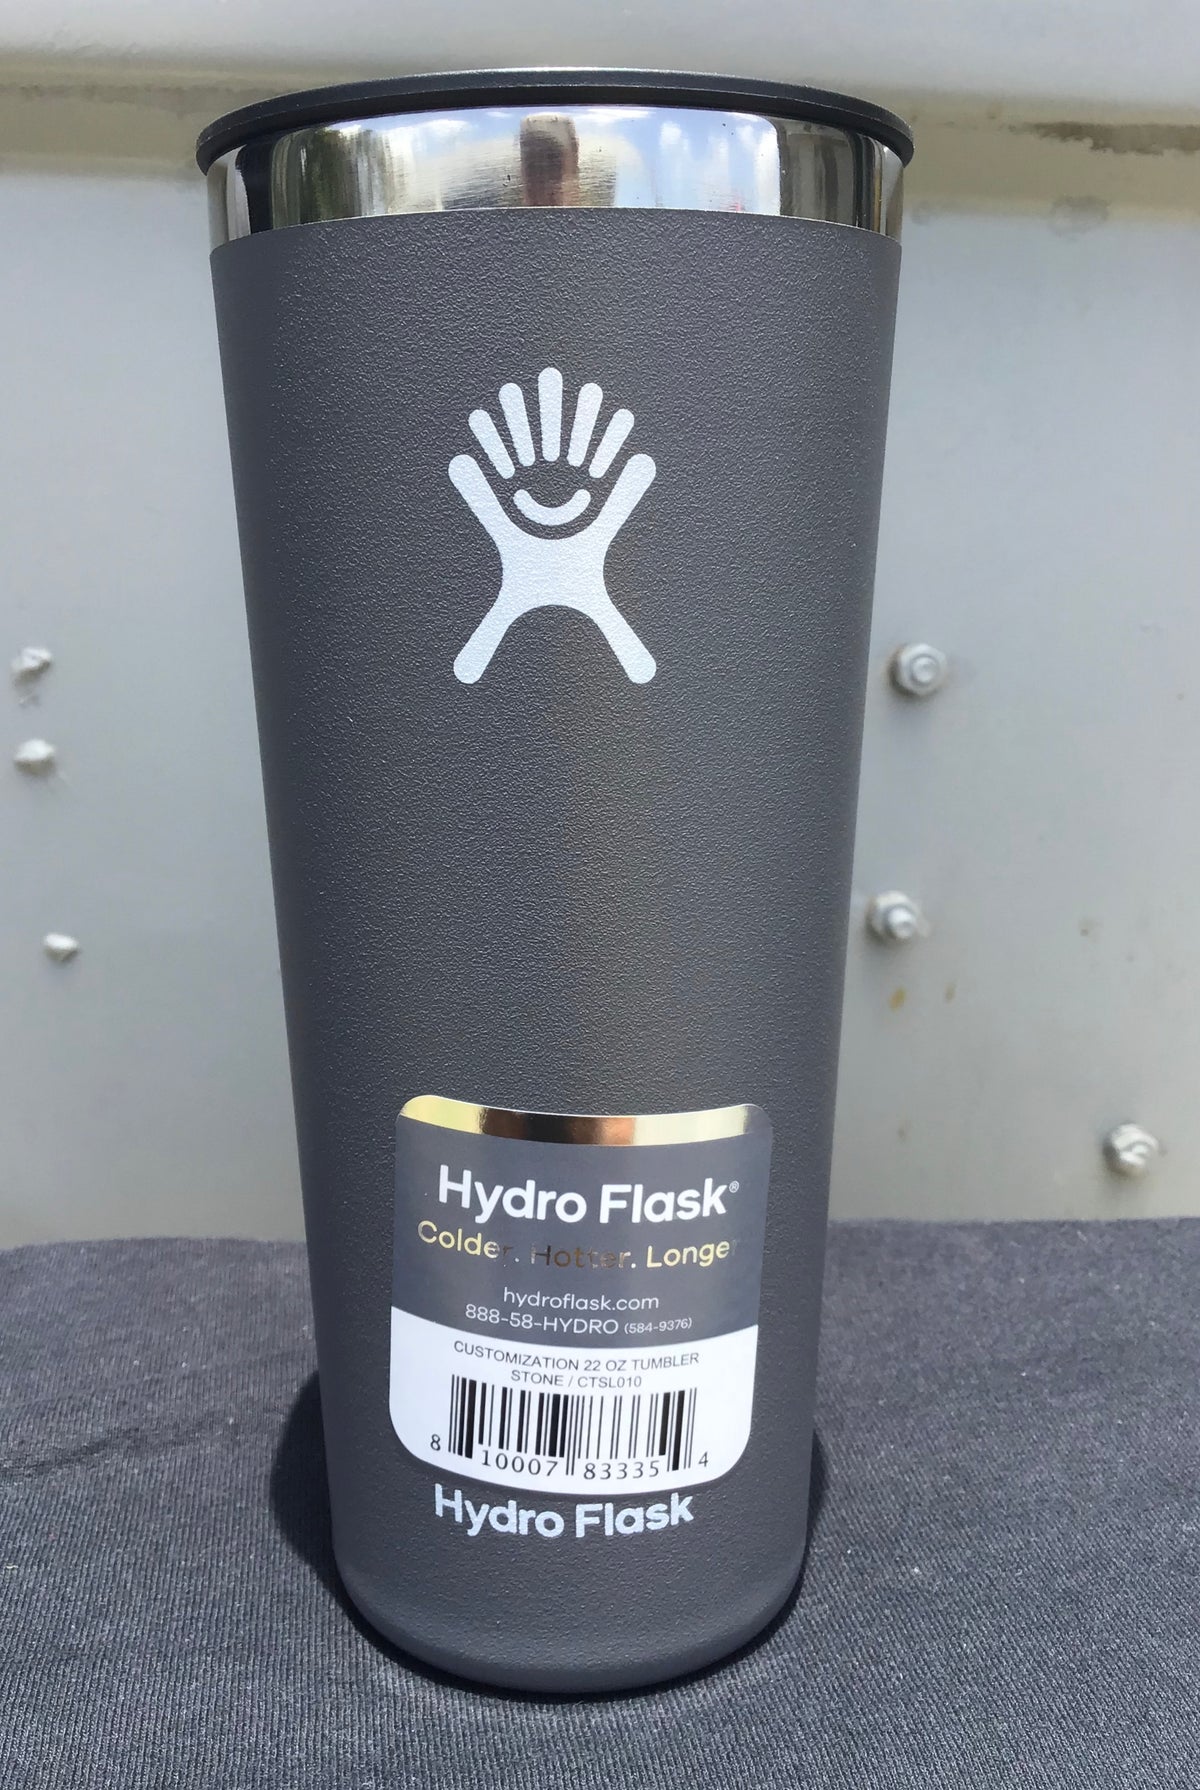 Hydro Flask Tumbler